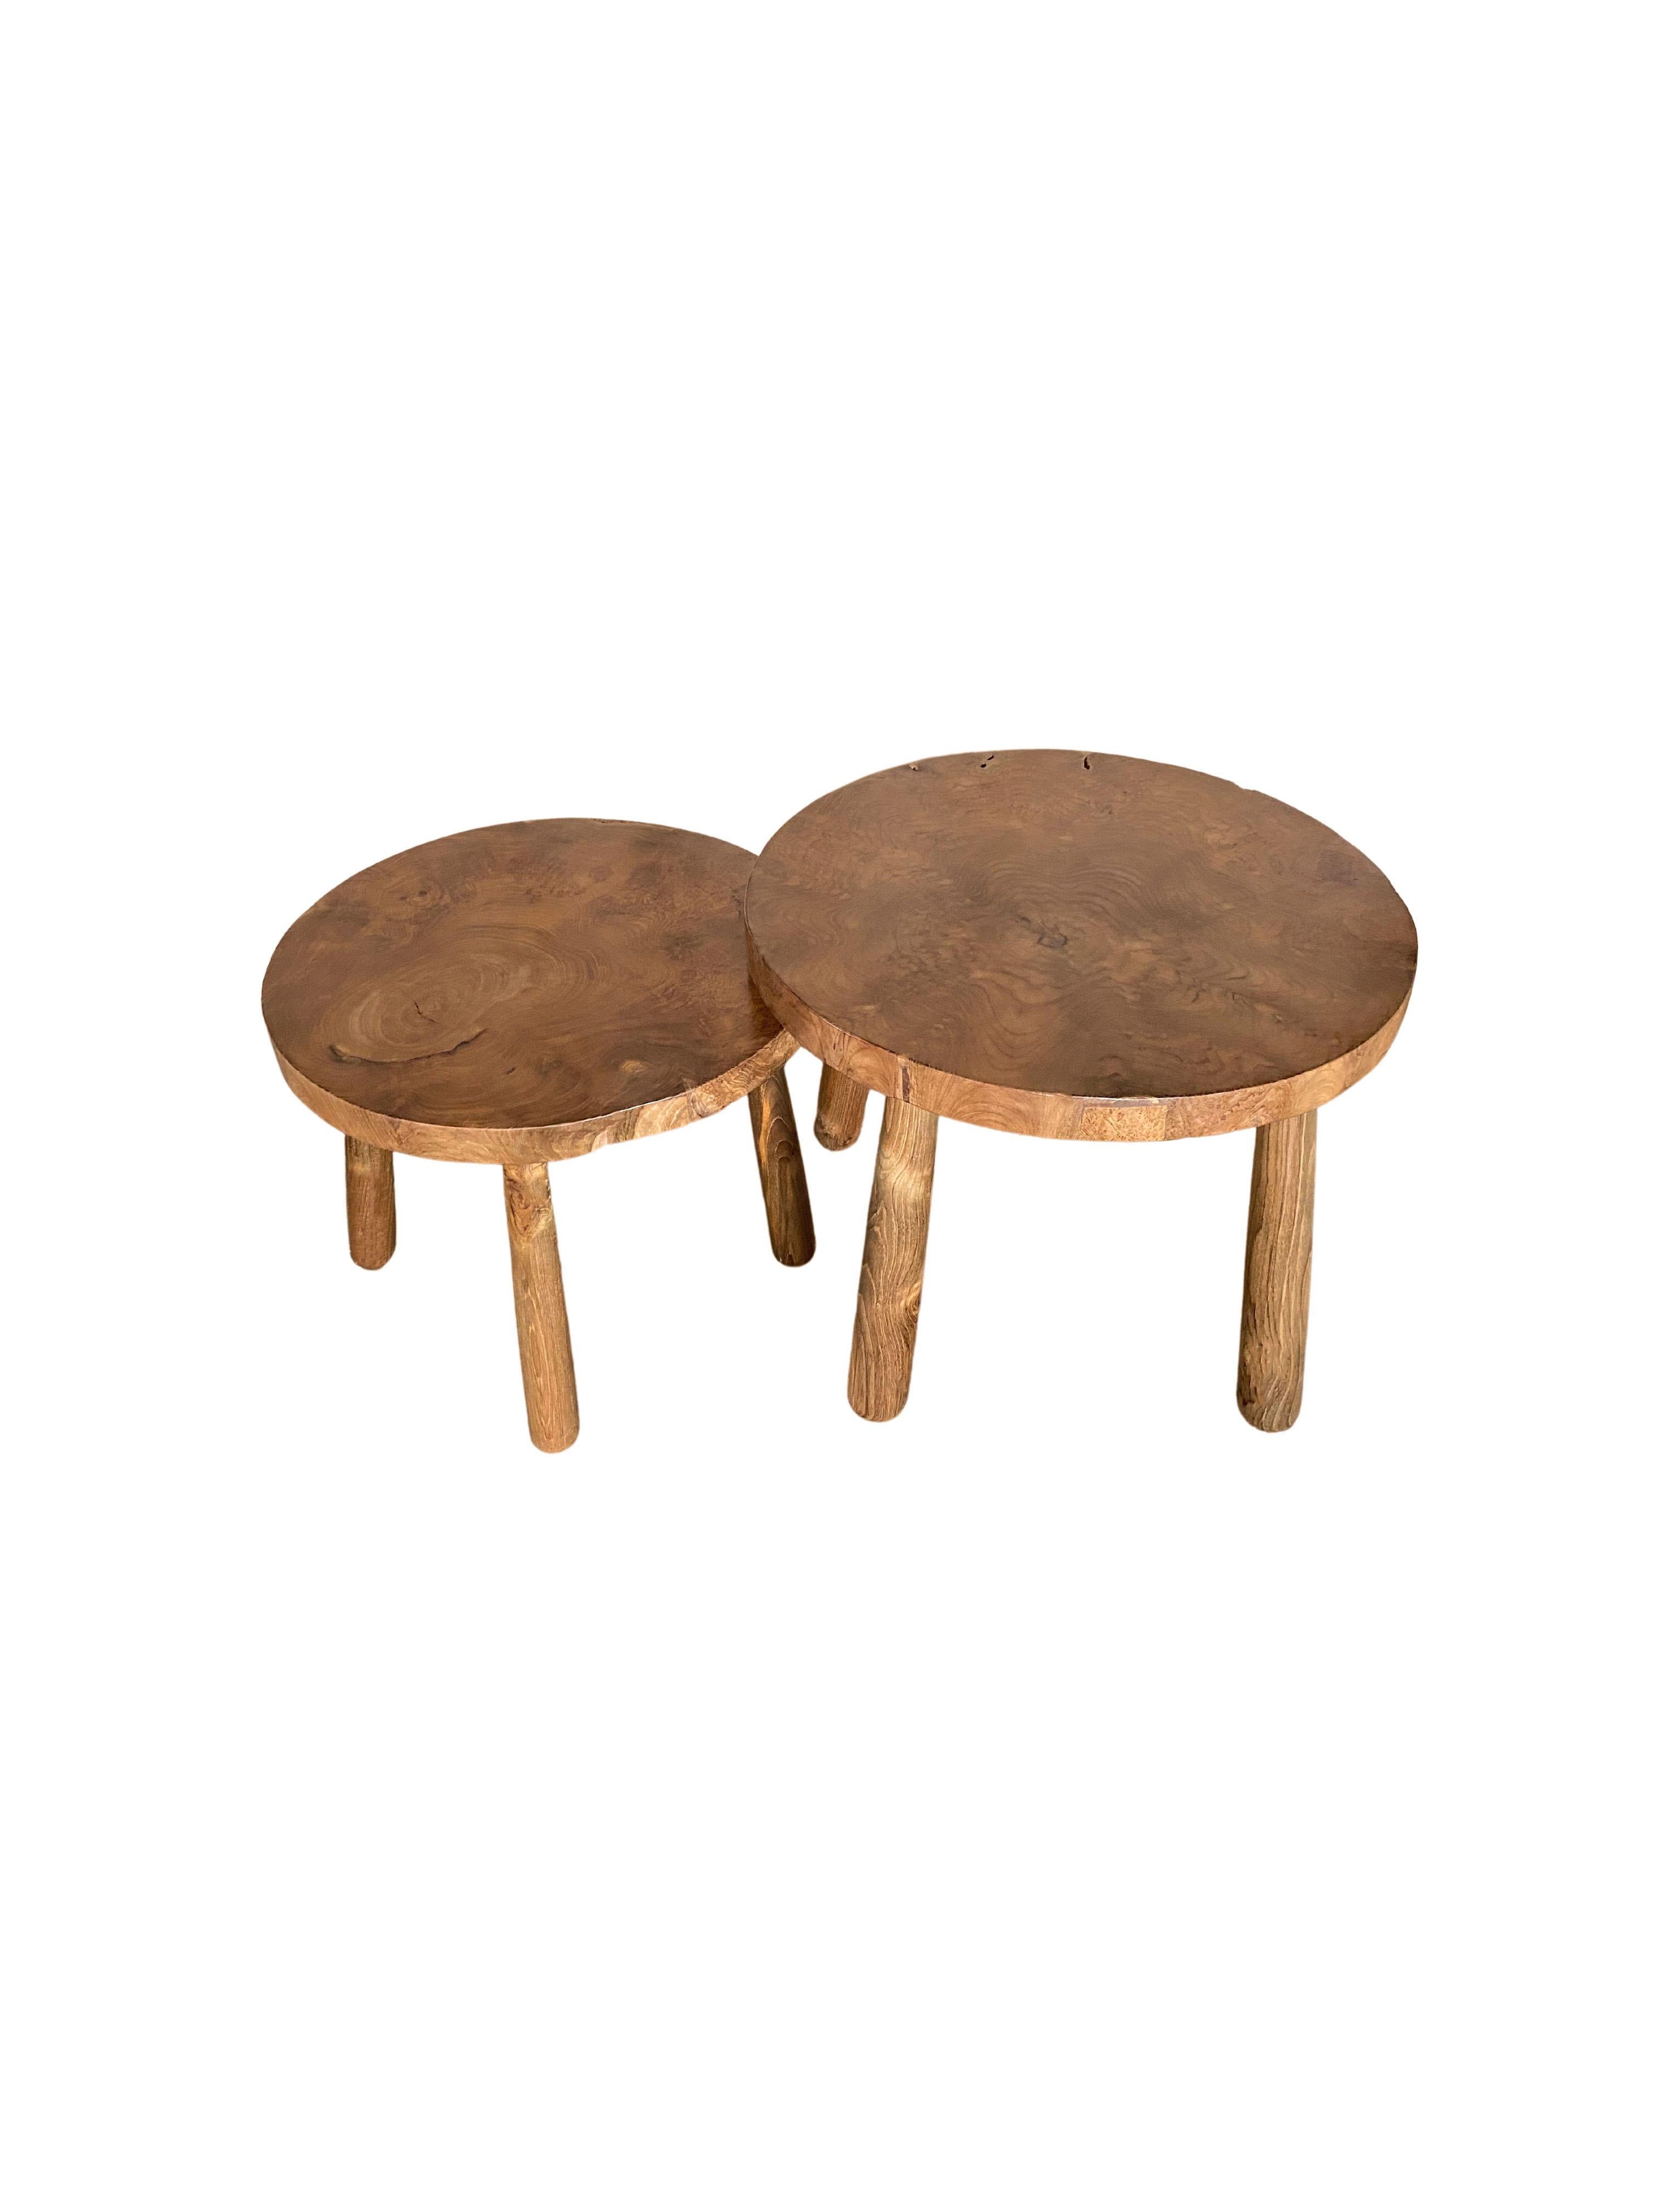 Organic Modern Set of Sculptural Teak Burl Wood Side Tables For Sale